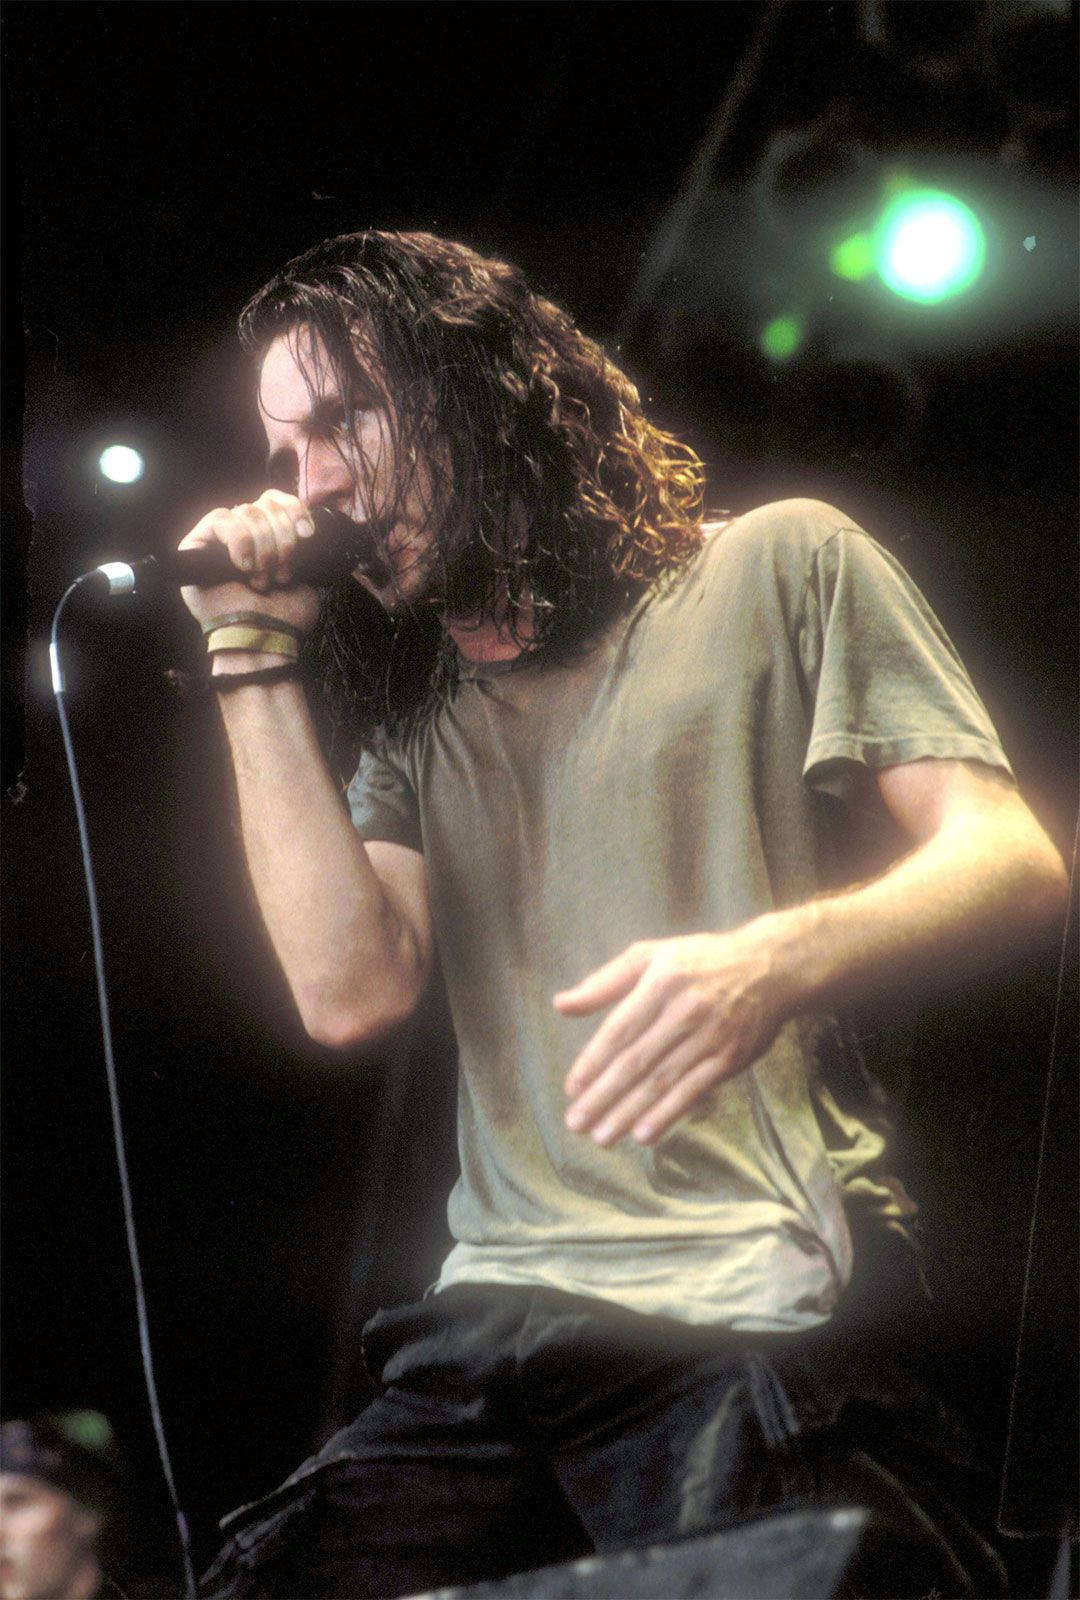 Pearl Jam Rock Band Lead Singer Eddie Vedder